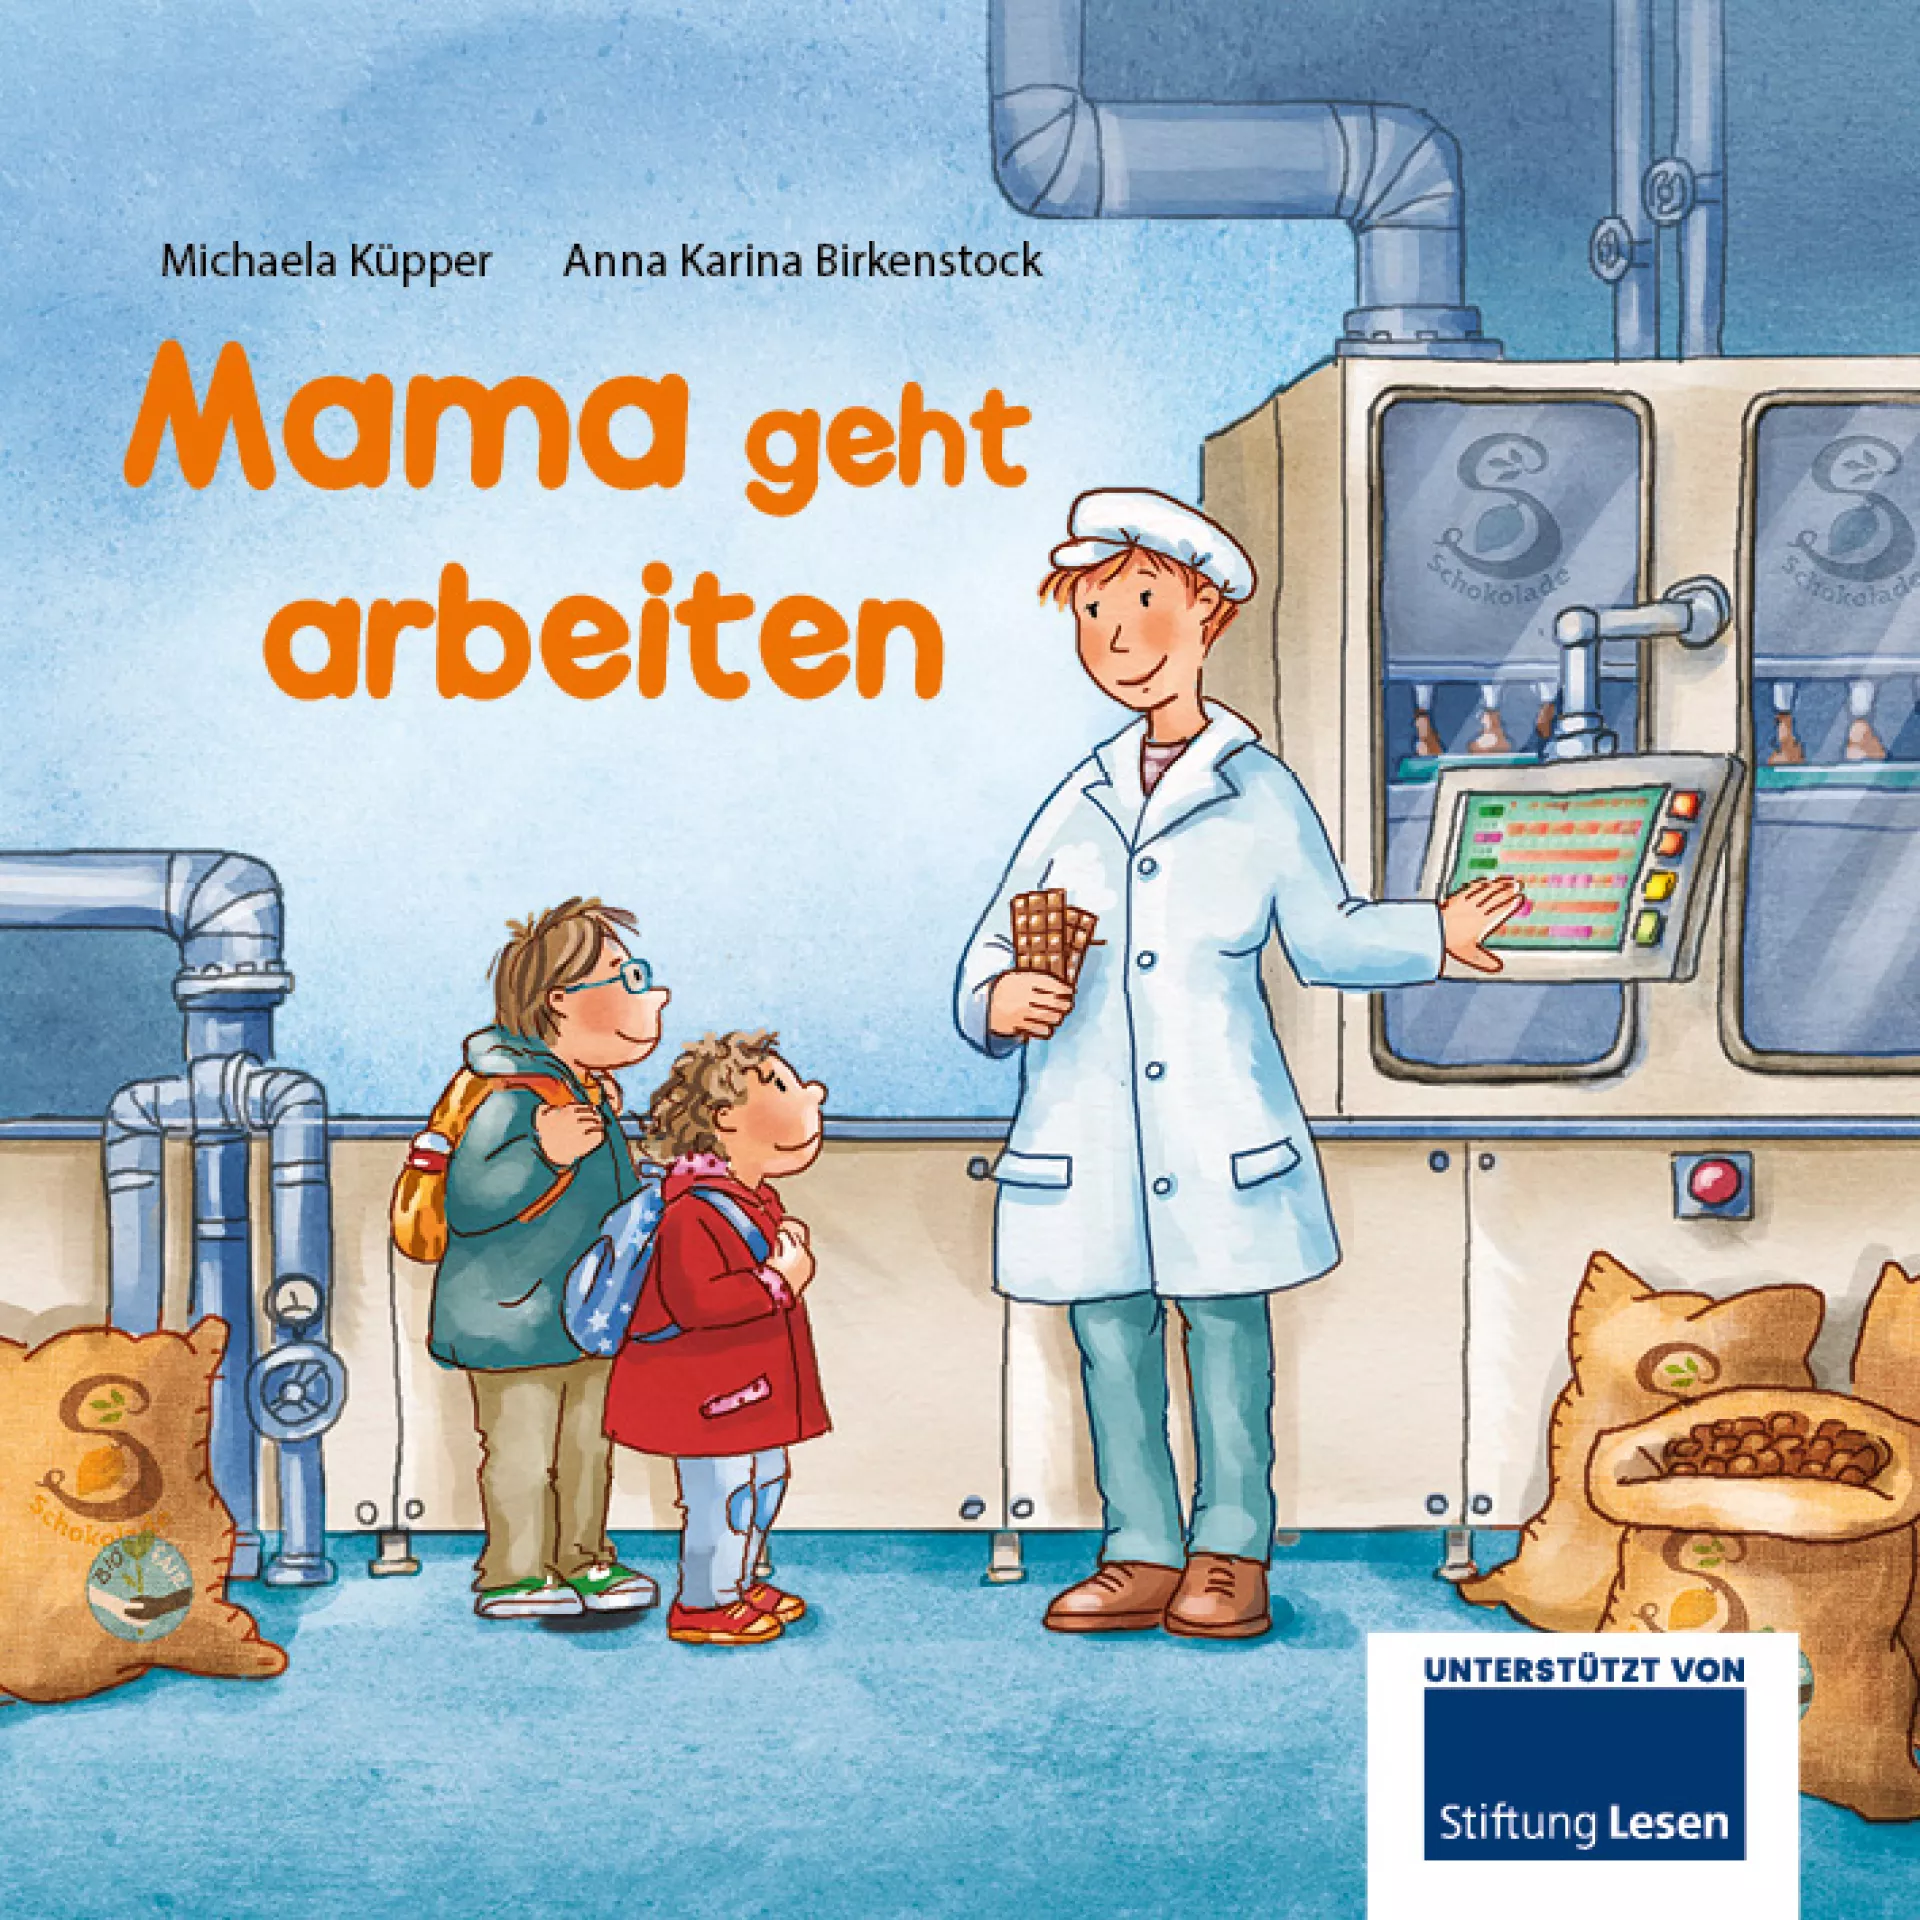 Abbildung vom Kinderbuch "Mama geht arbeiten"